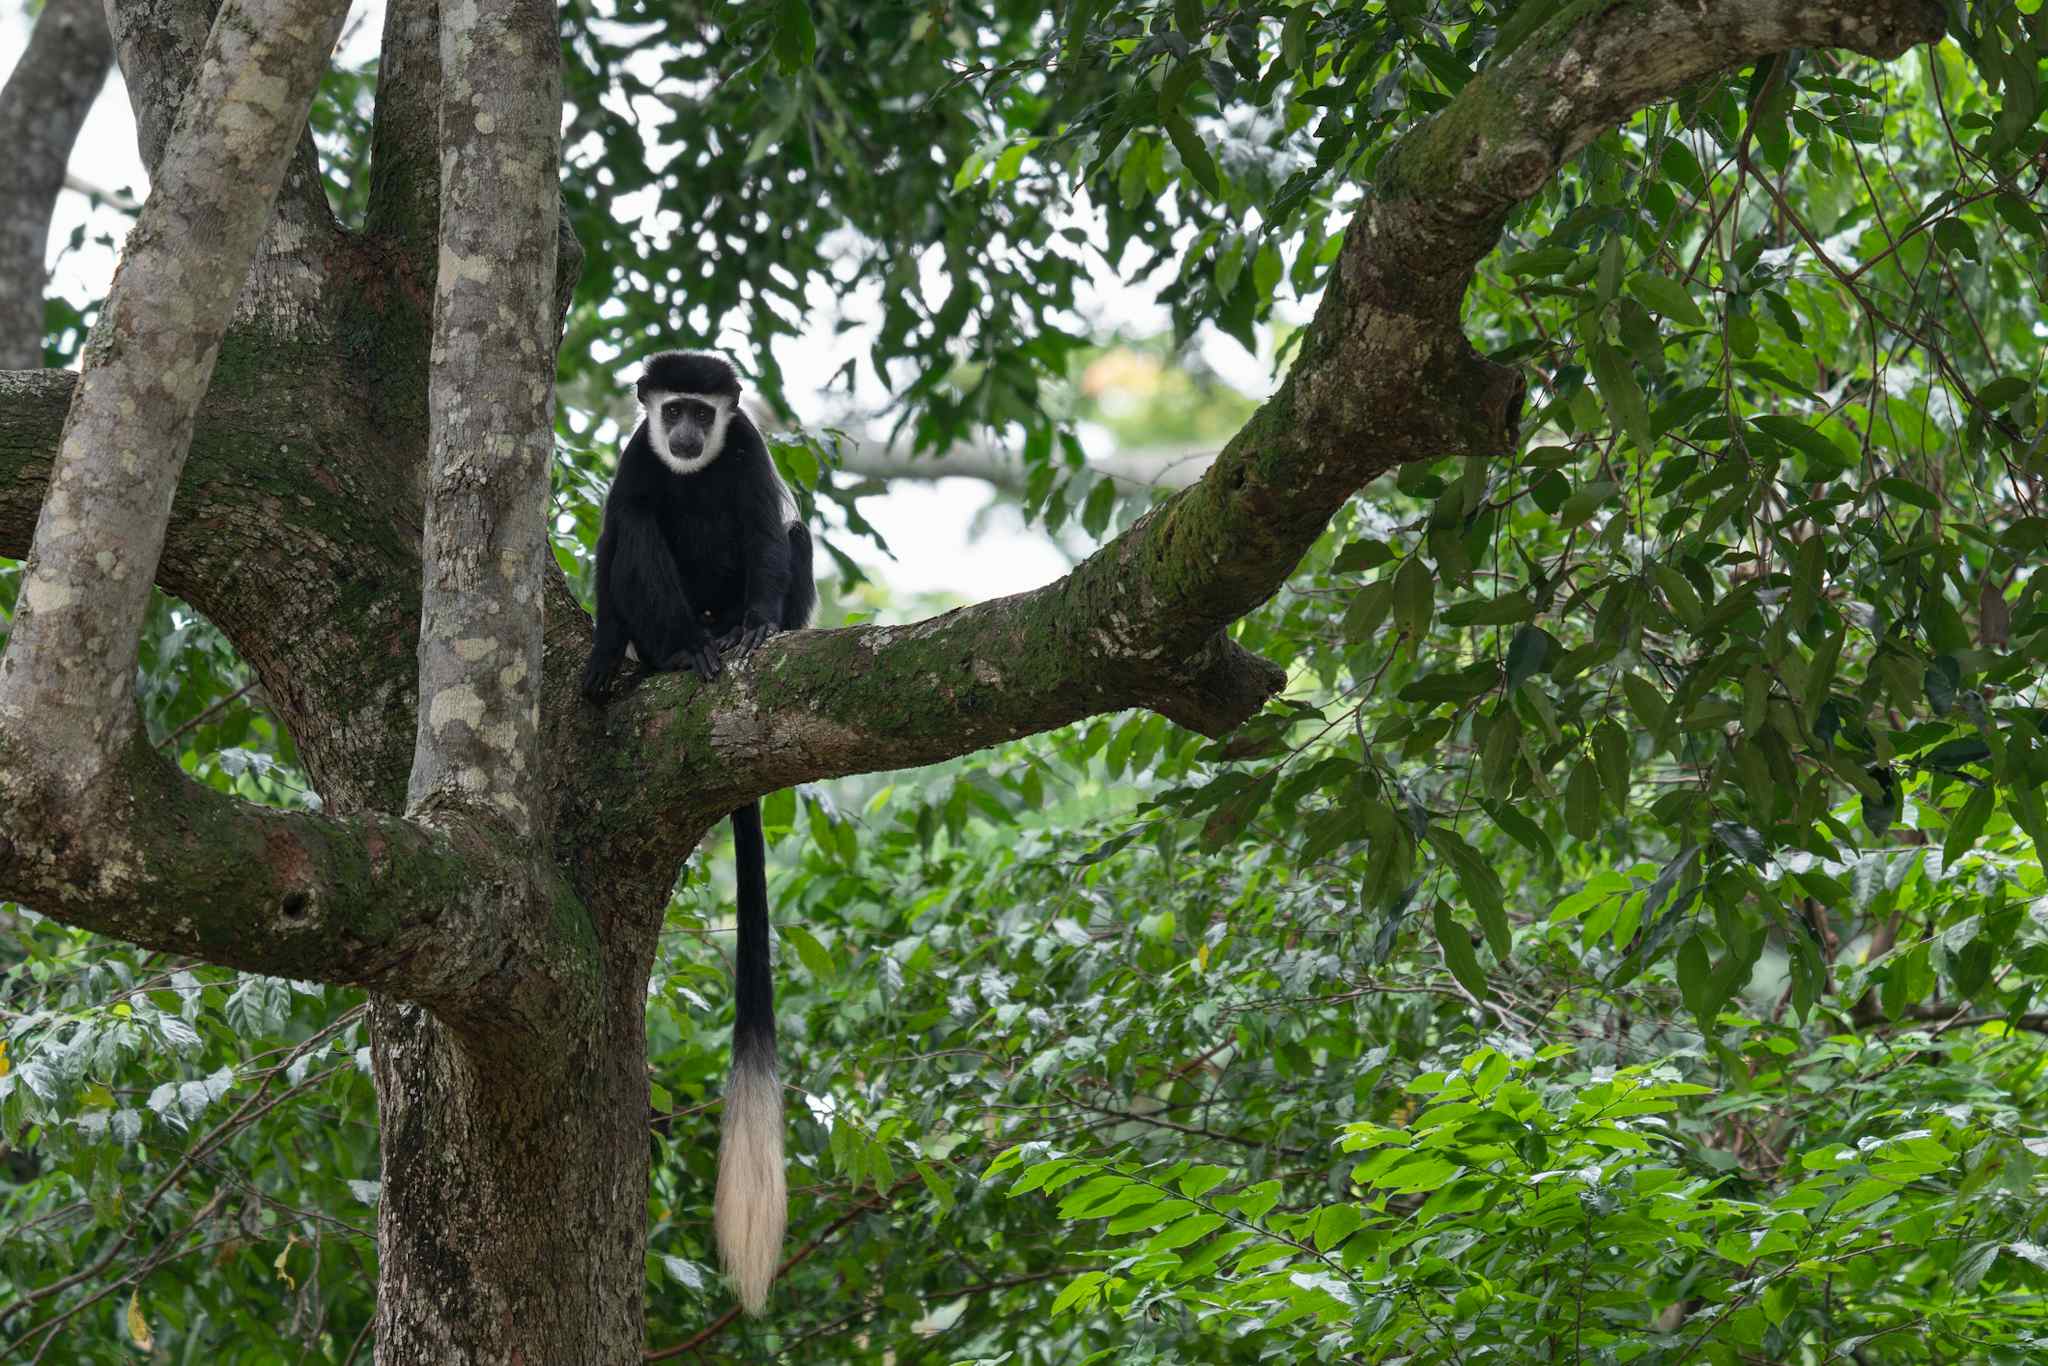 Black and white Colobus monkey, Uganda
GettyImages-1362774689